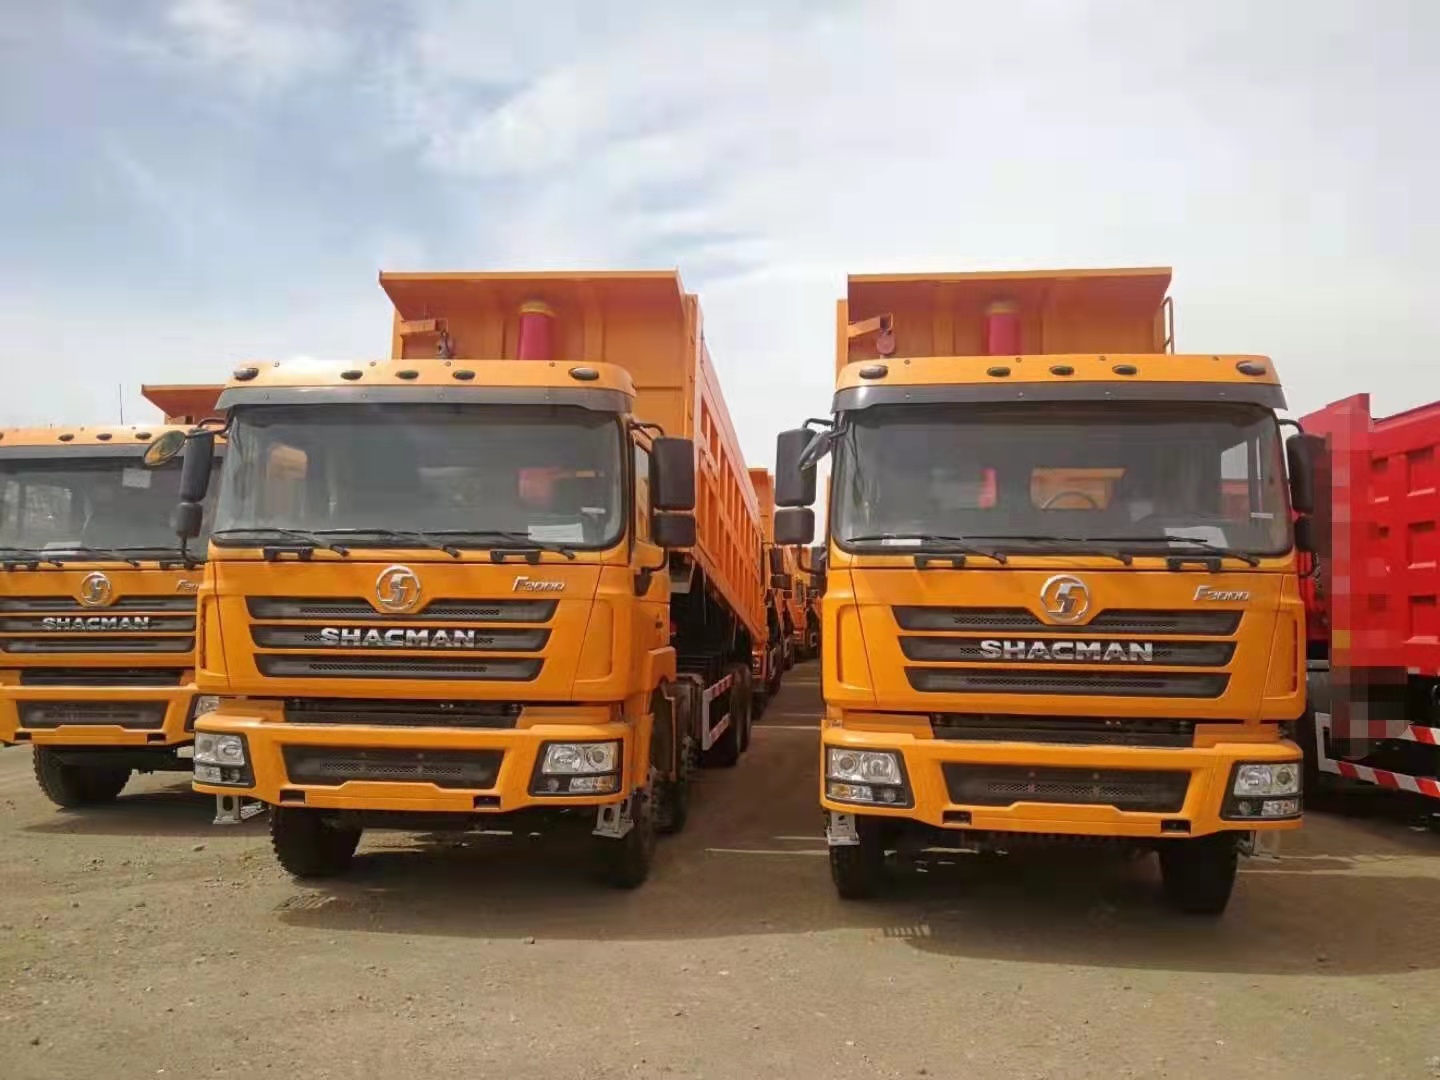 Venda quente 25-30 toneladas shacman f3000 6*4 8x4 caminhão de dump tipper